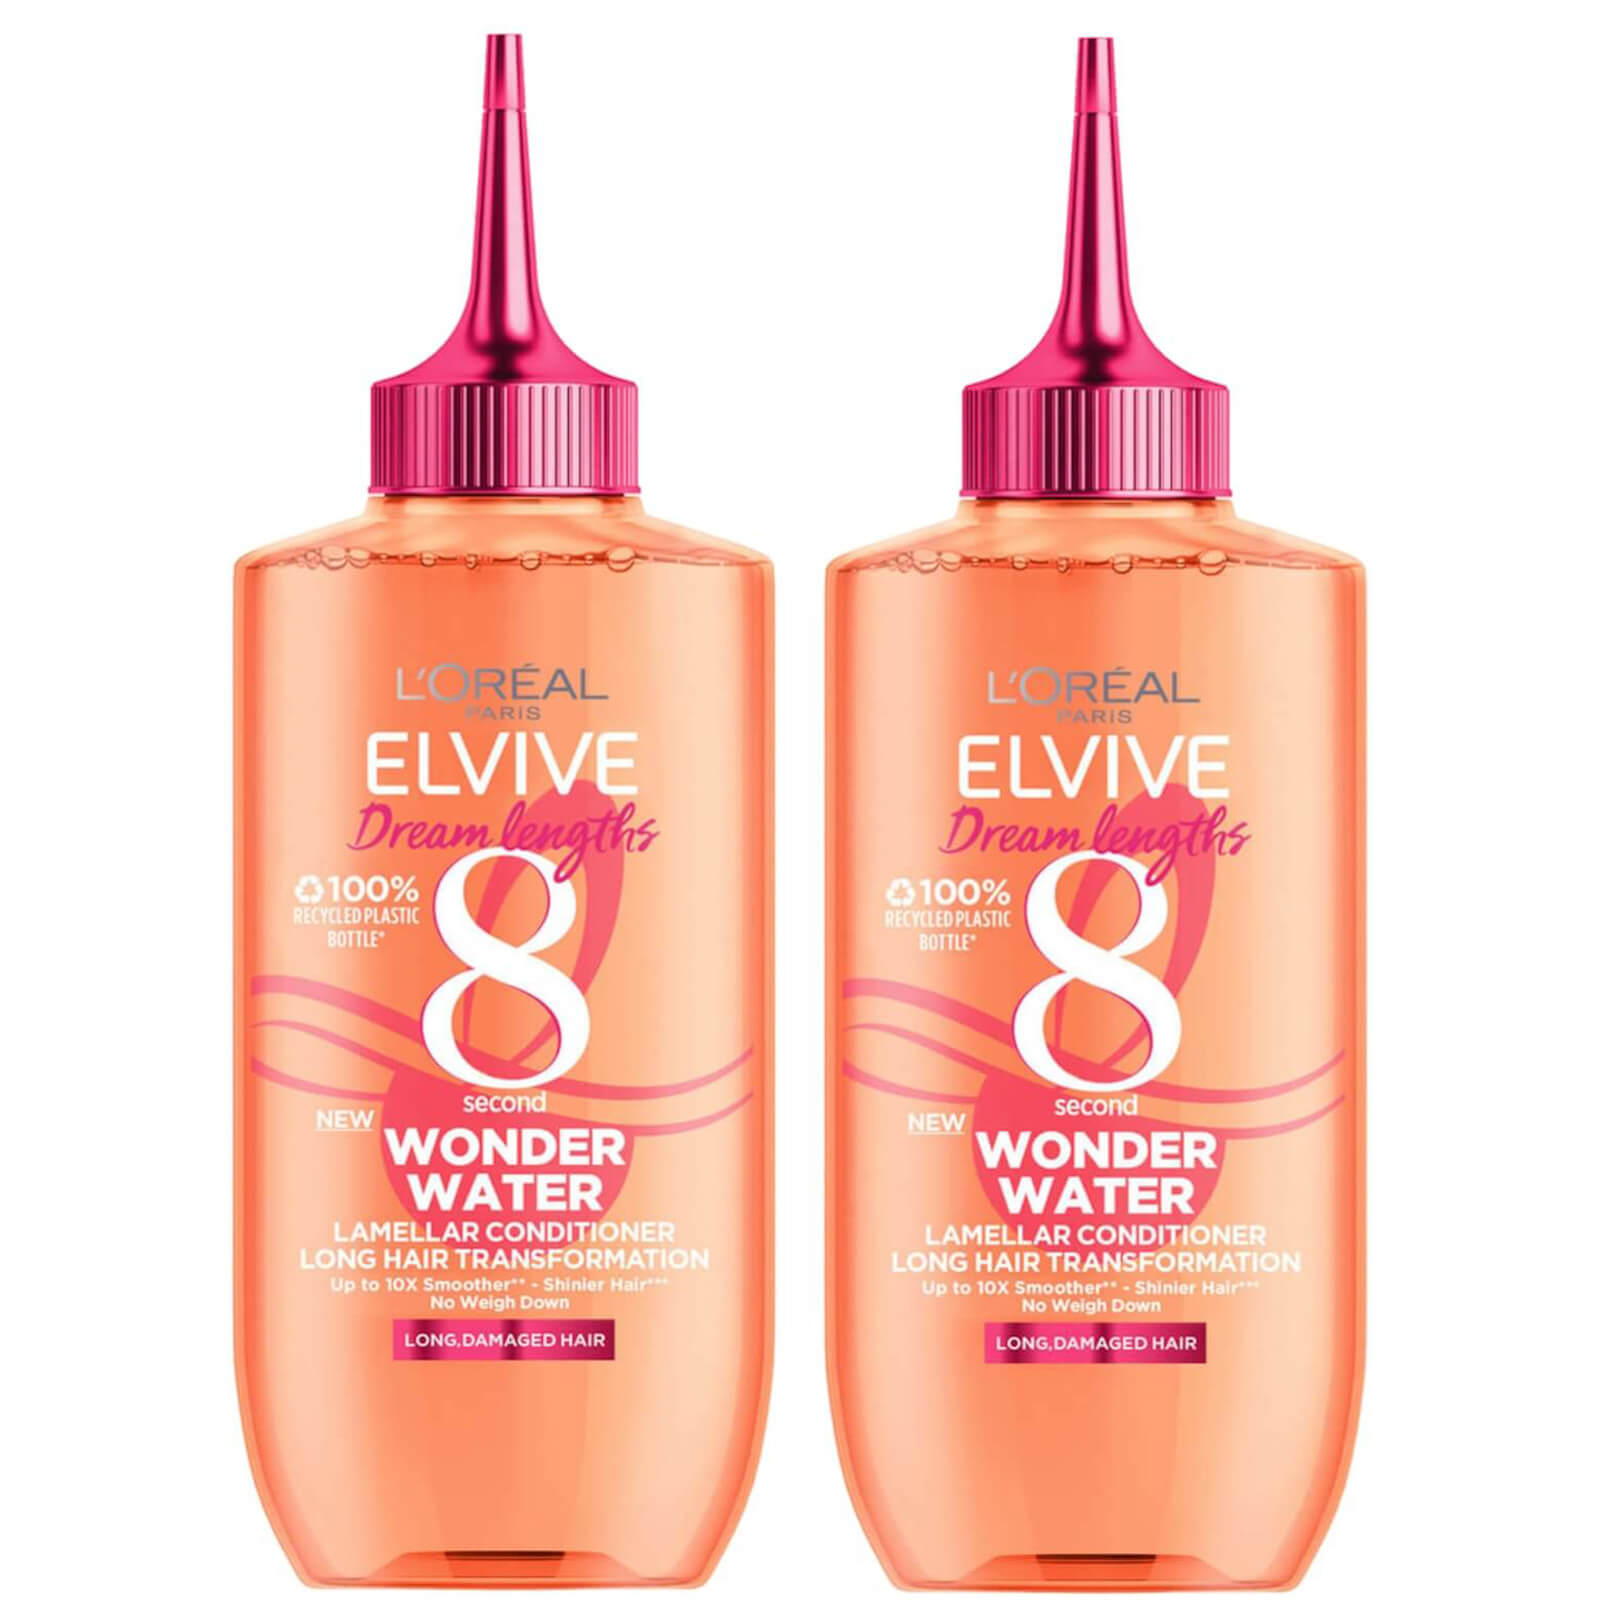 L'Oréal Paris Elvive Dream Lengths Wonder Water 8 Second Hair Treatment 200ml Duo